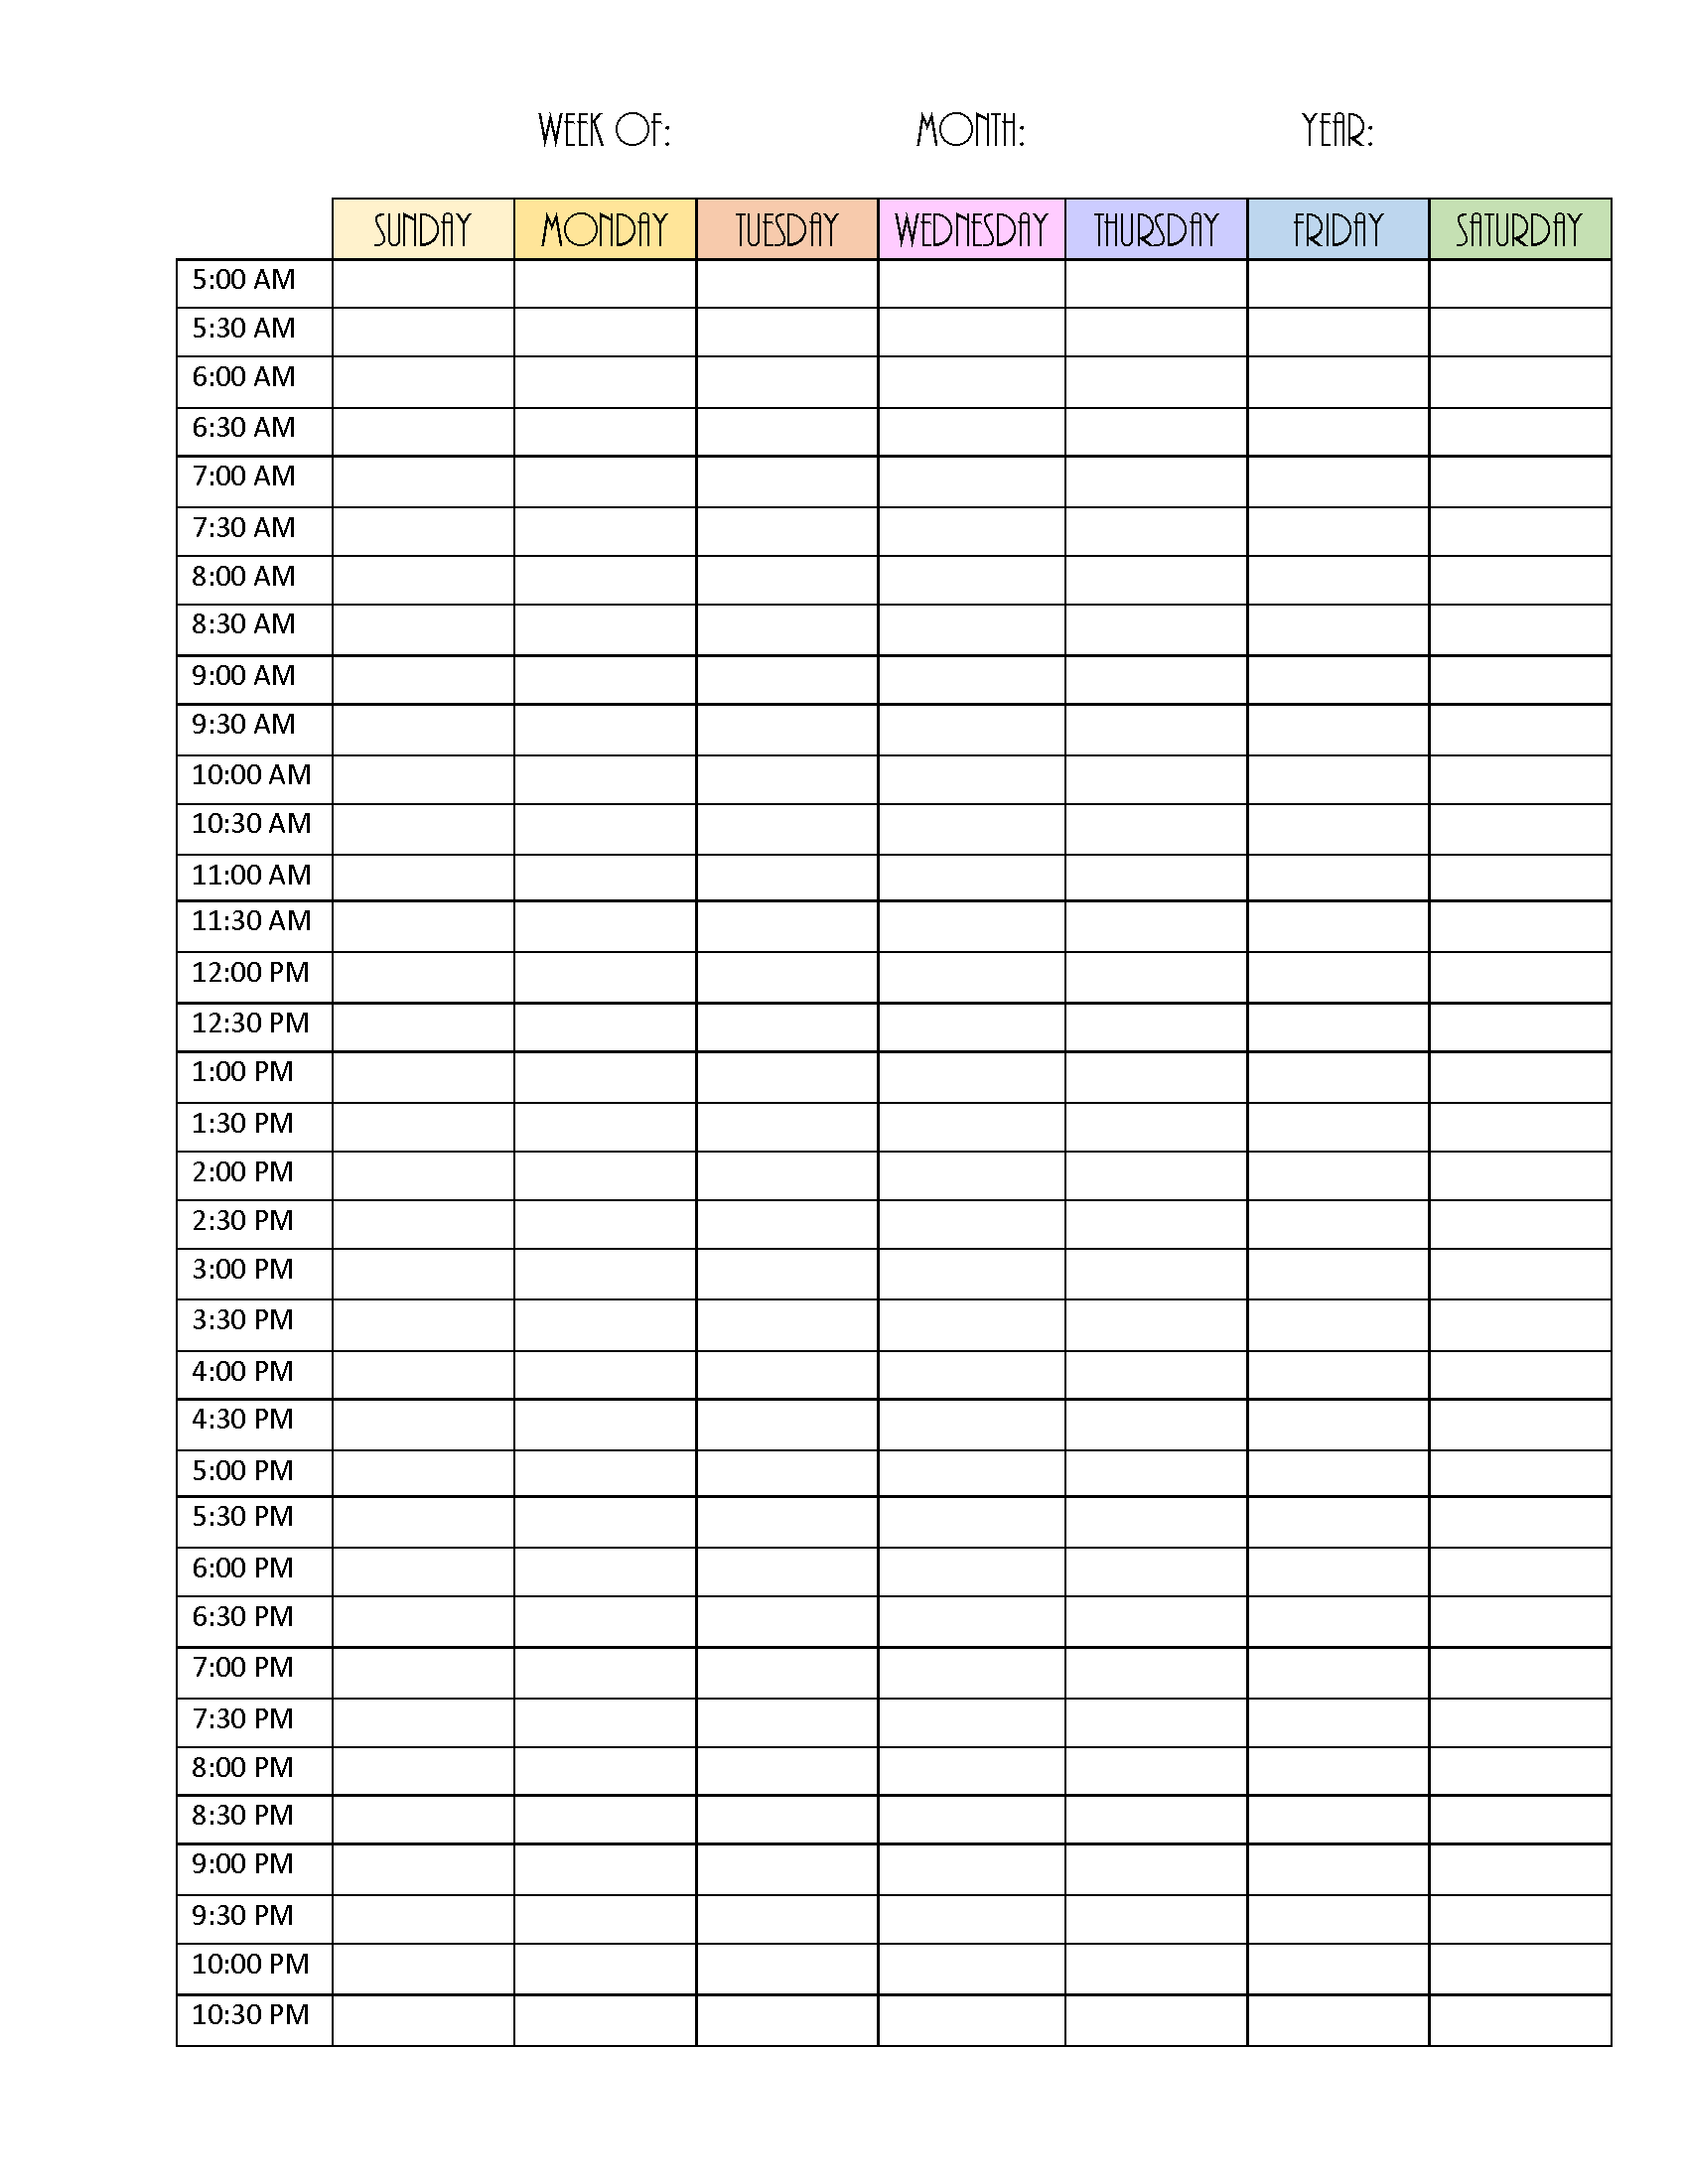 Blank Weekly Calendar Editable PDF, Word or Image